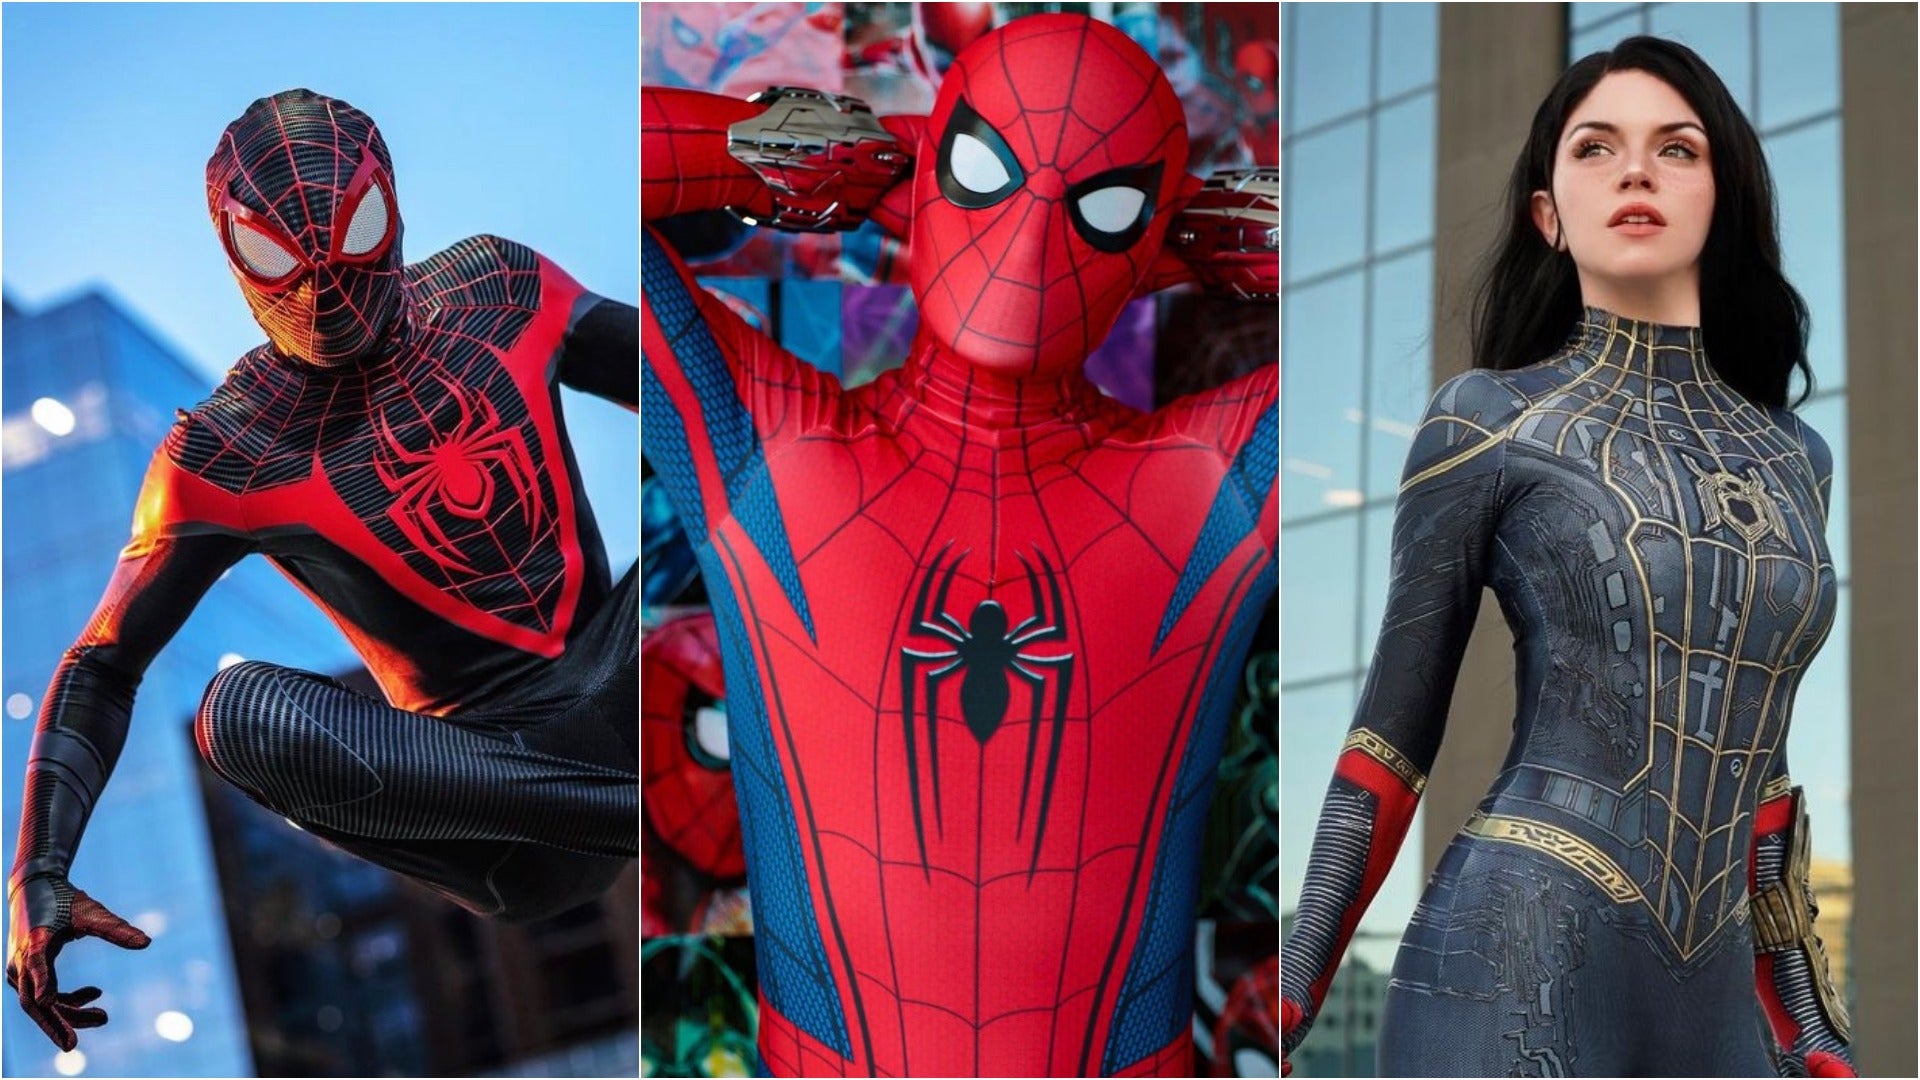 Blijkbaar ego binnenplaats Best Online Stores To Buy A Spider-Man Costume | Cosplay Central